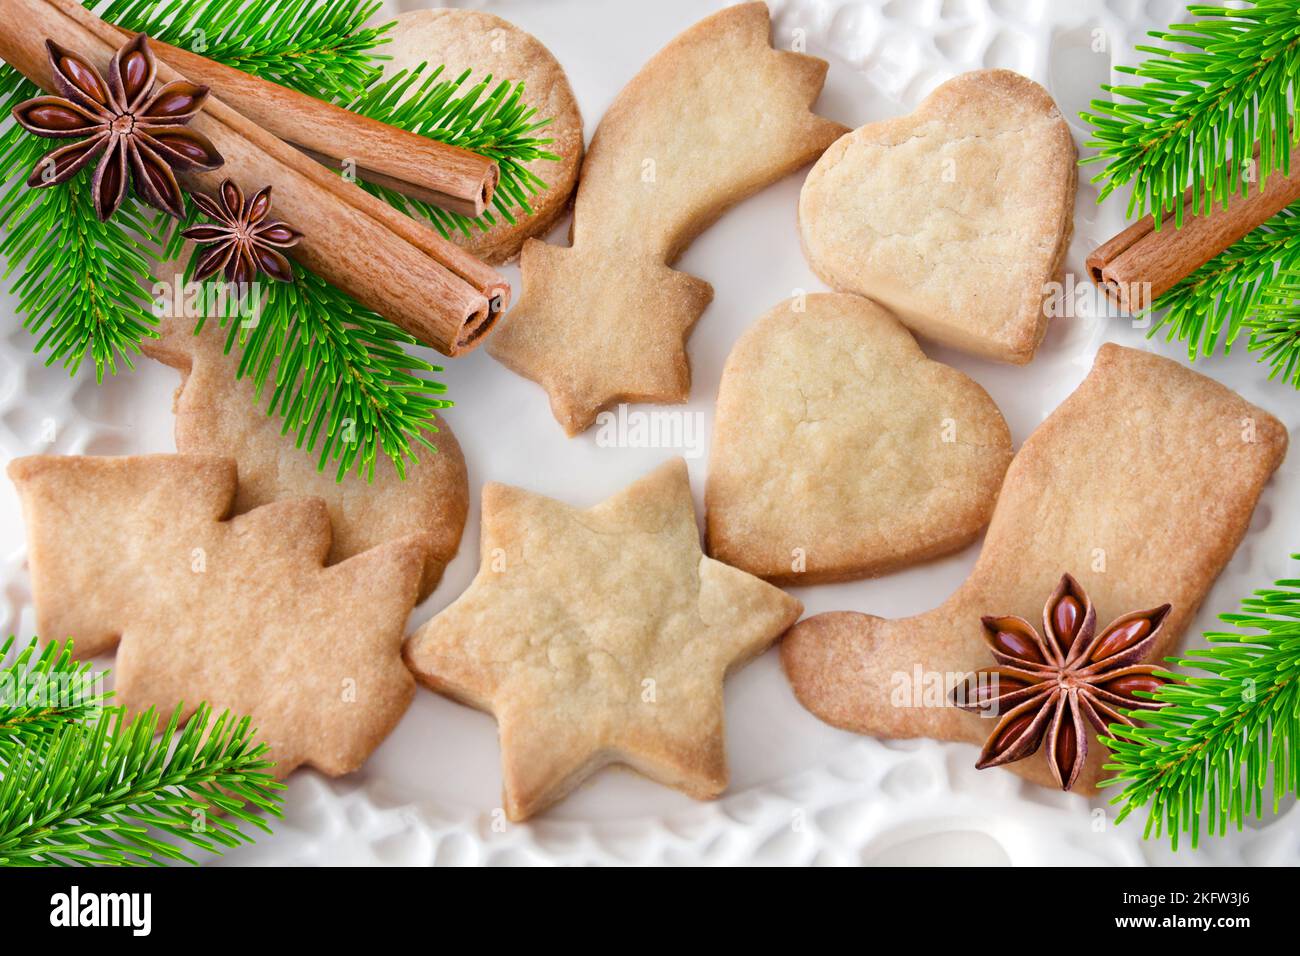 Biscuits de Noël à la cannelle, branches de sapin et anis sur une assiette blanche Banque D'Images